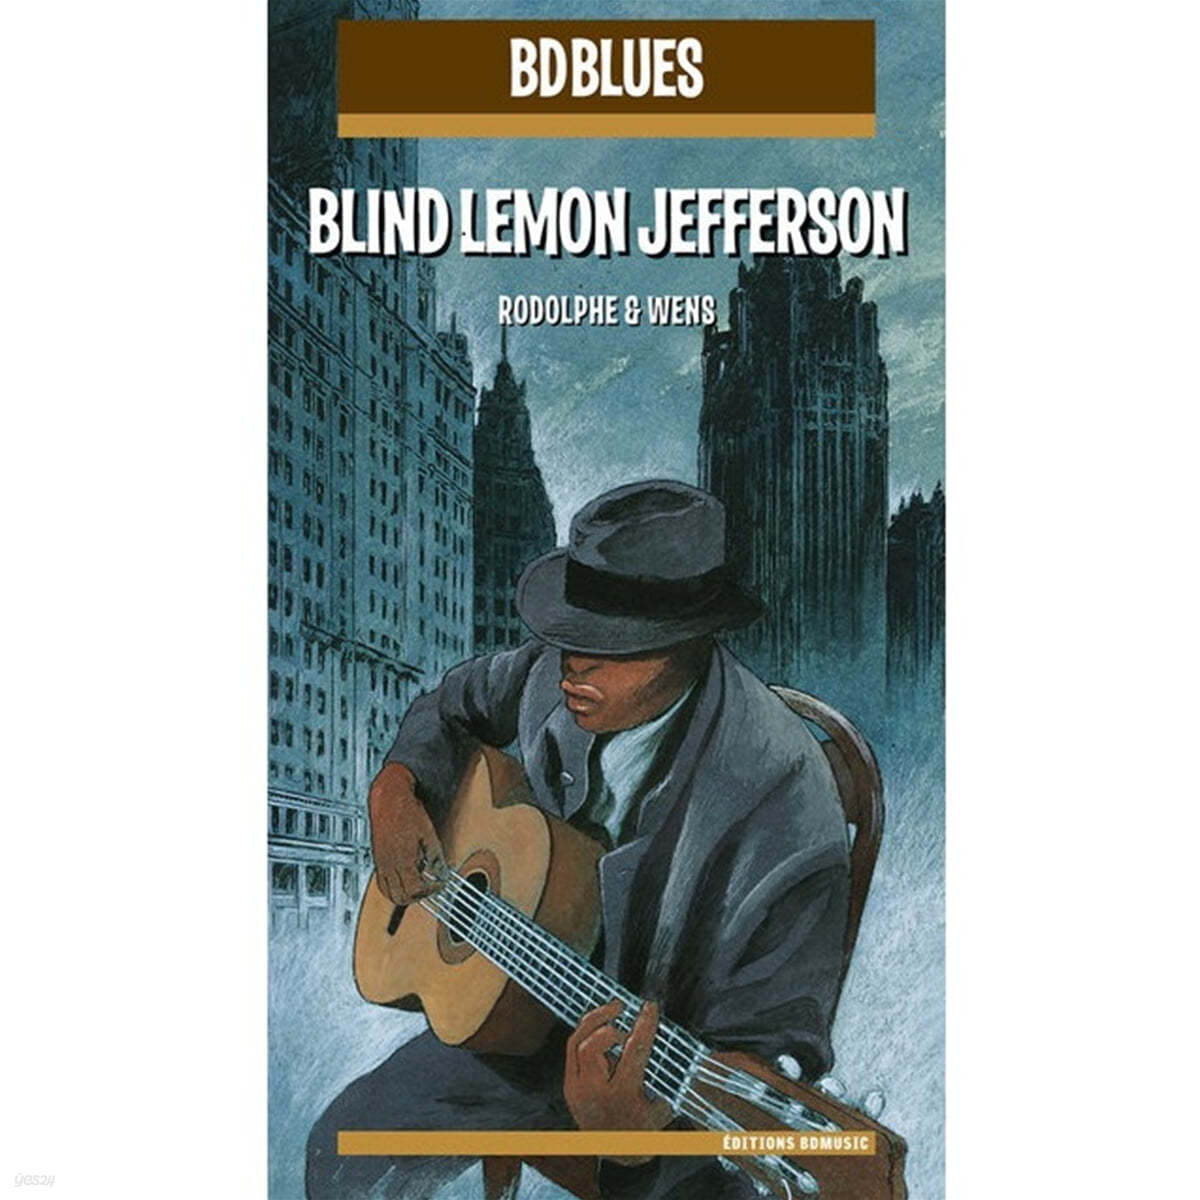 일러스트로 만나는 블라인드 레몬 제퍼슨 (Blind Lemon Jefferson Illustrated by Rodolphe & Wens) 